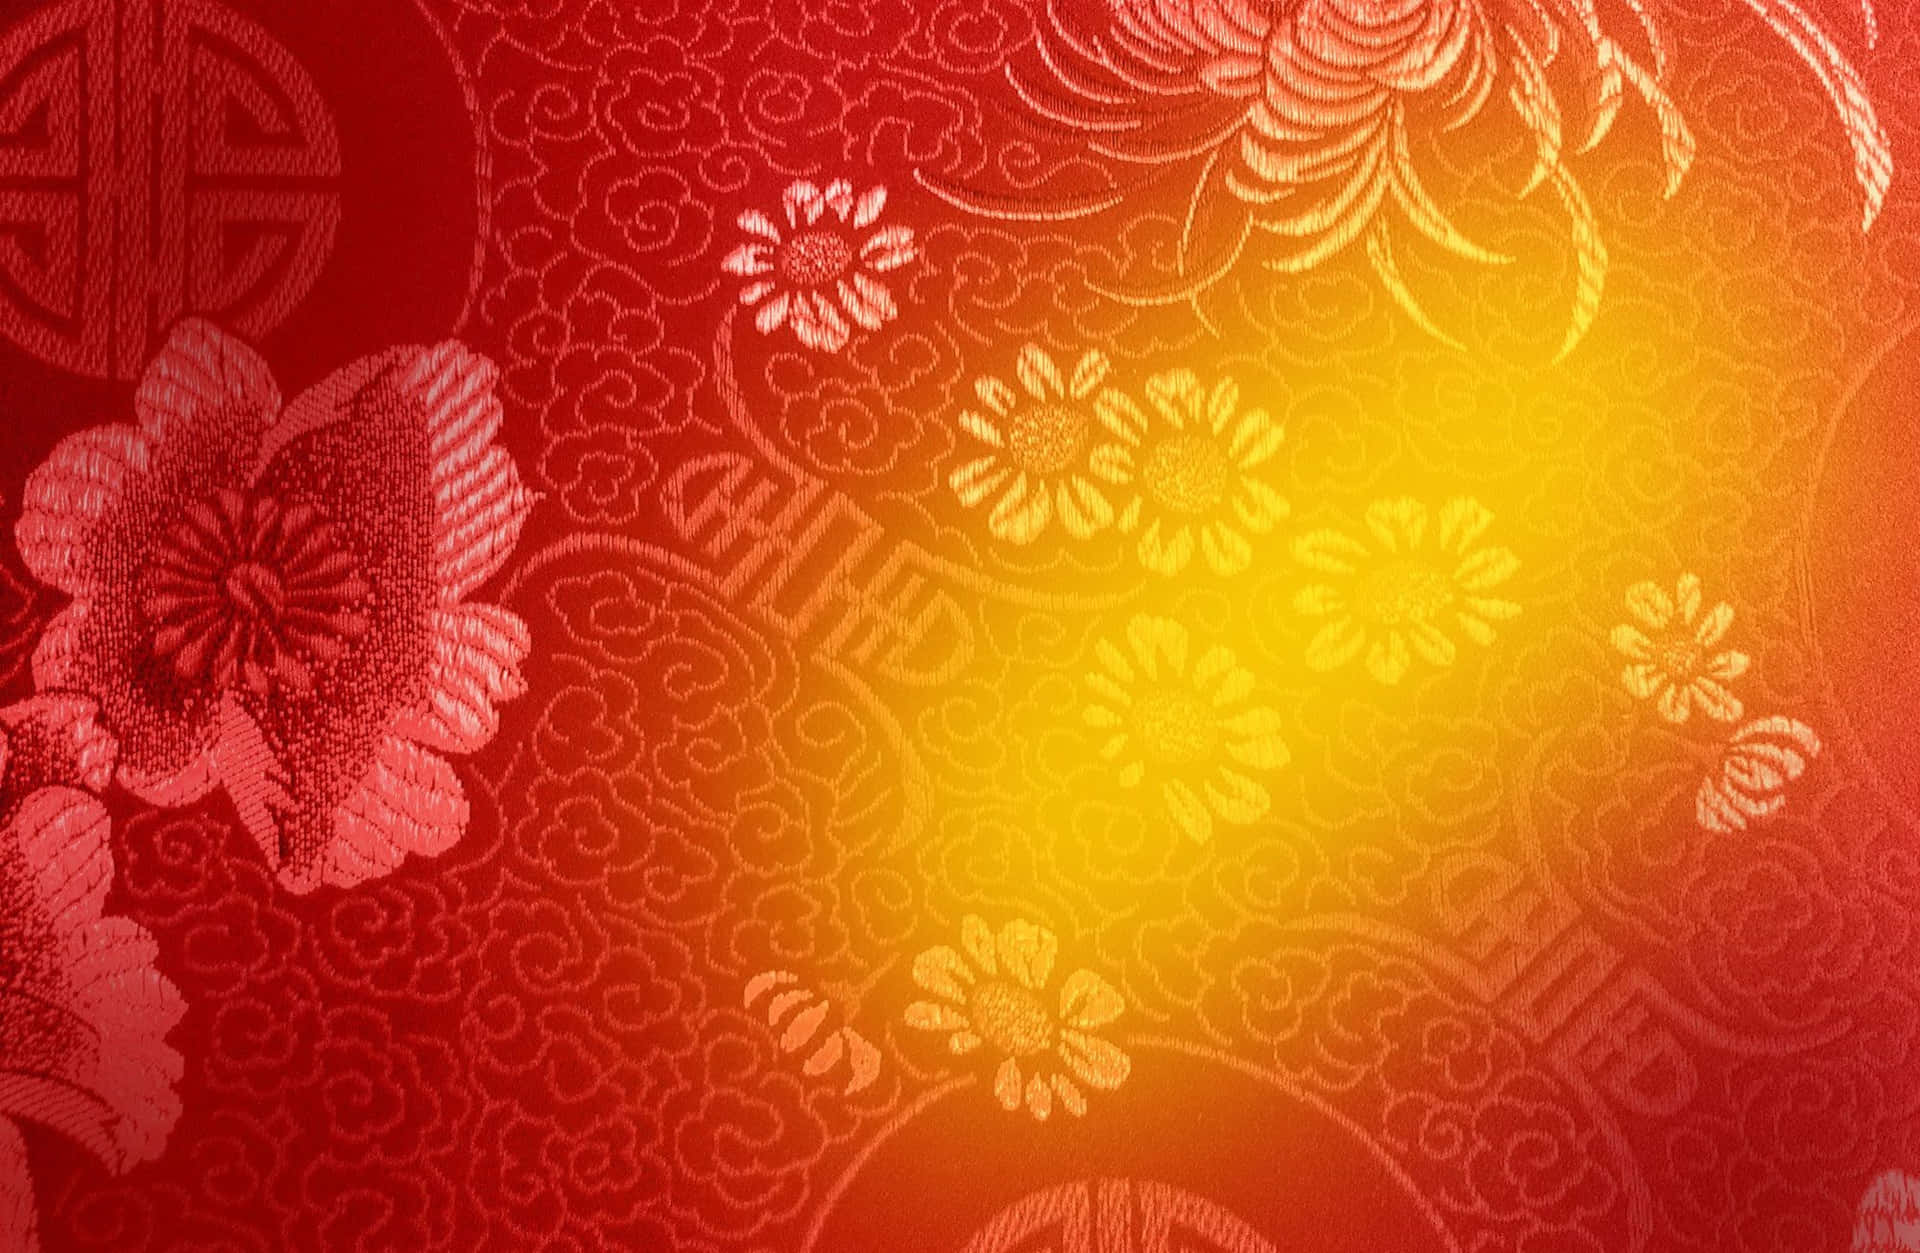 Ensymbol För Glädje Och Välstånd - En Festlig Gyllene Bakgrund För Det Kinesiska Nyåret.